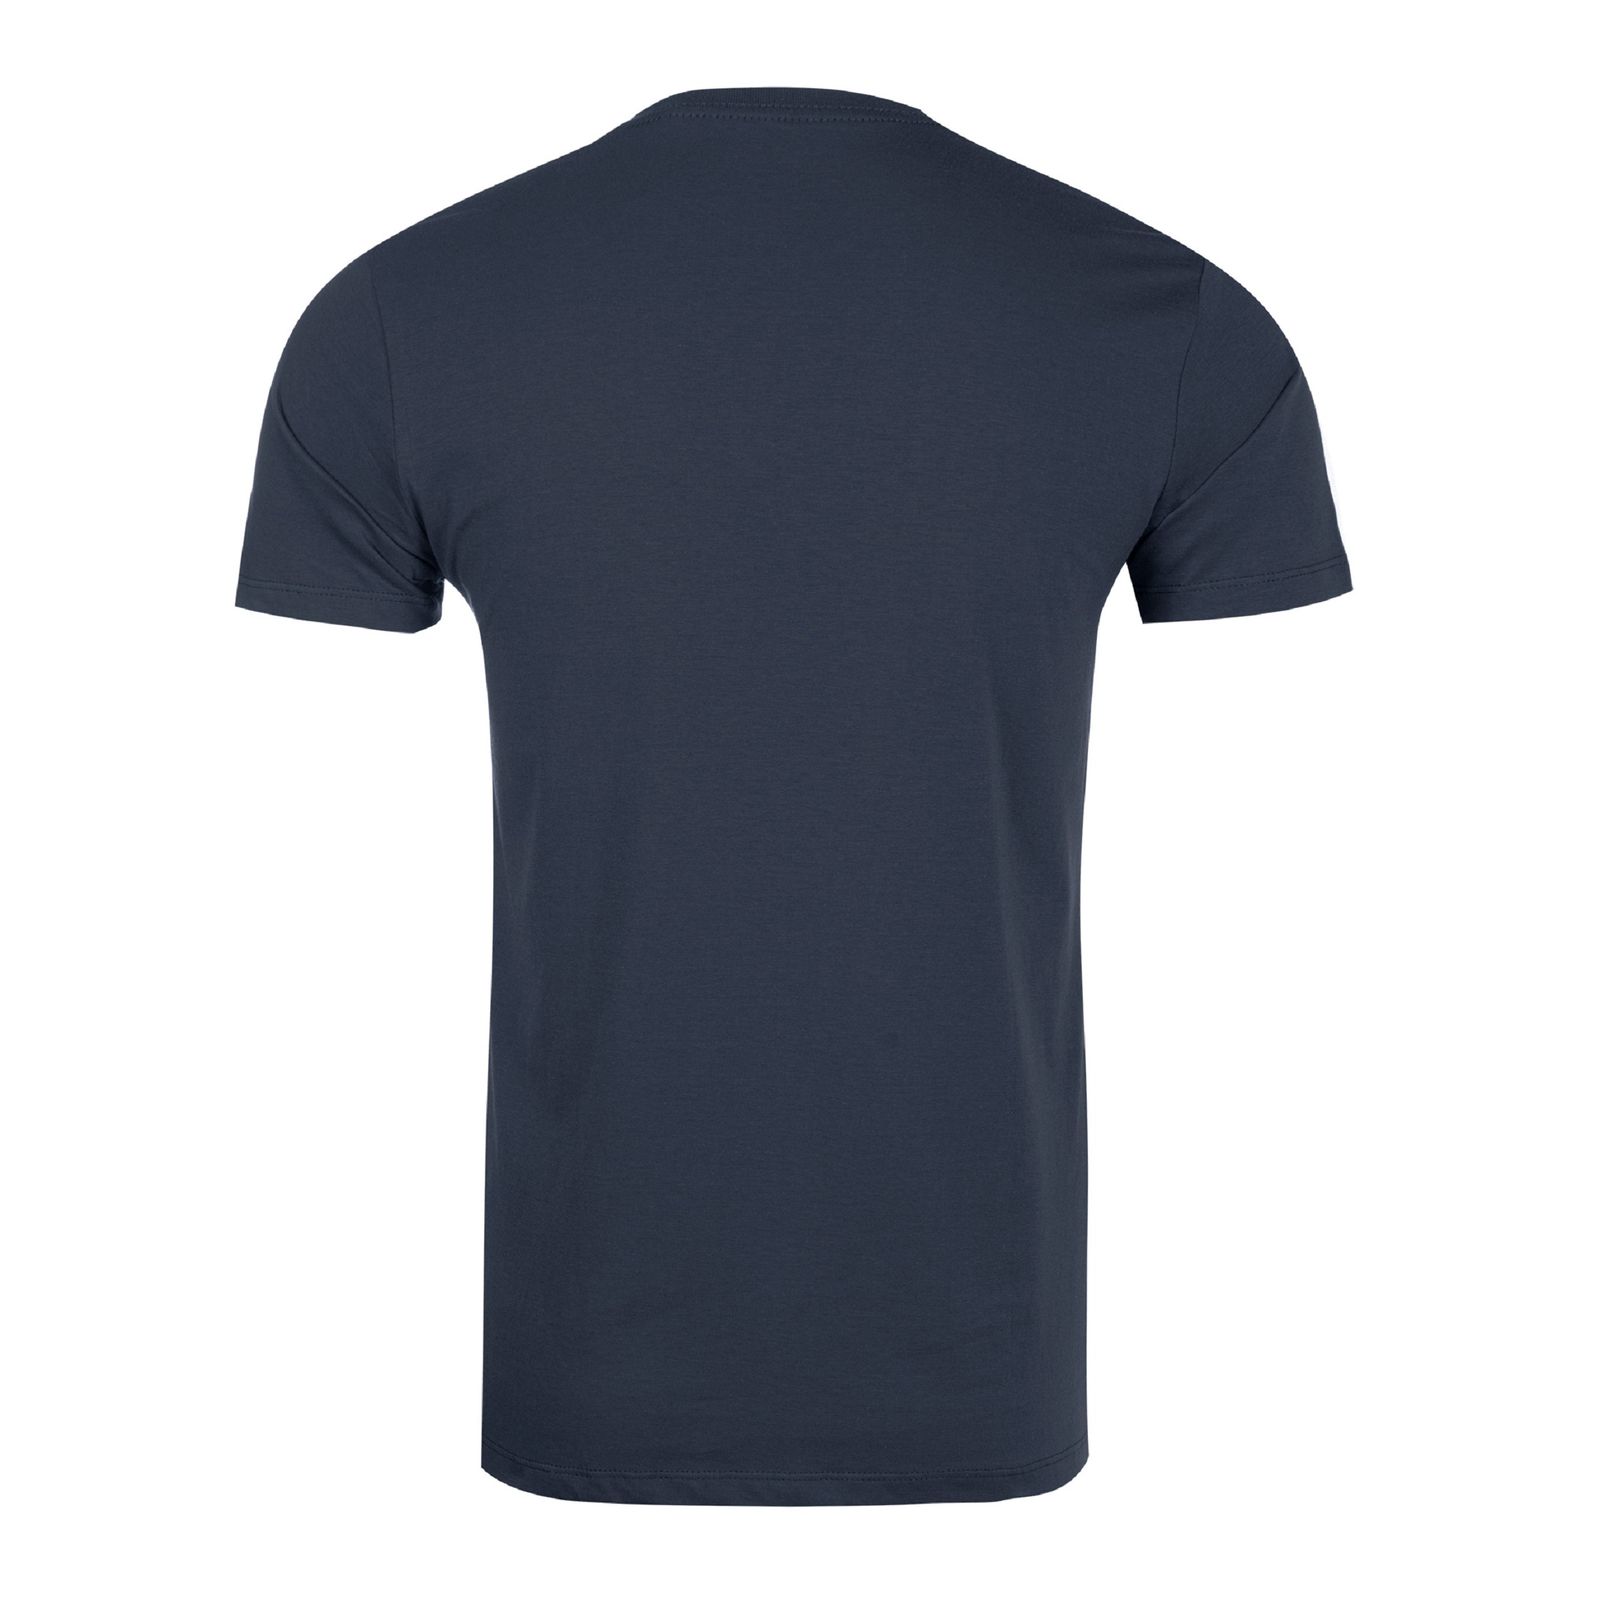 تی شرت آستین کوتاه مردانه جوتی جینز مدل یقه گرد کد 1551334 رنگ طوسی تیره -  - 2